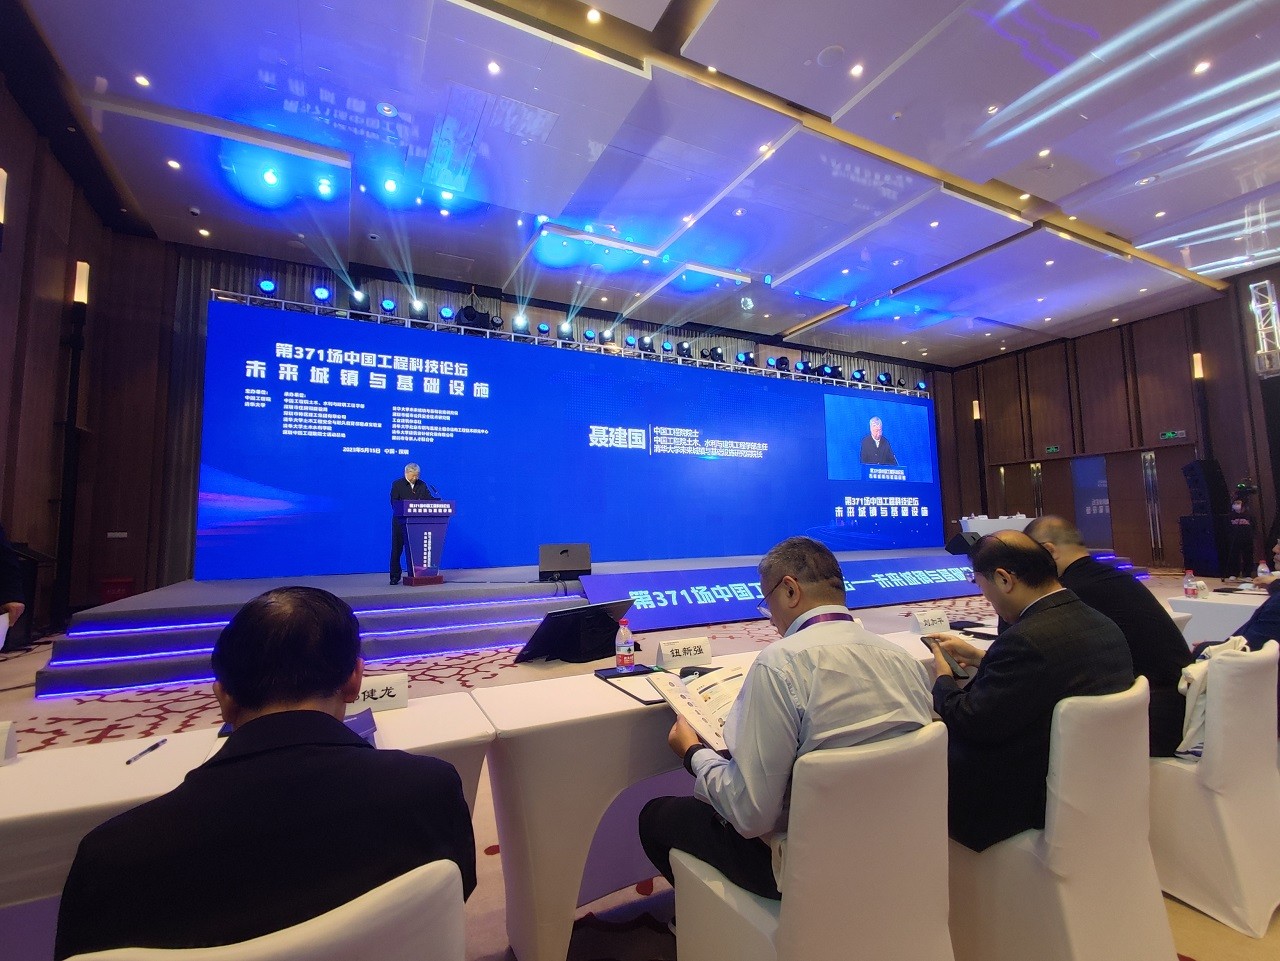 “第371场中国工程科技论坛—未来城镇与基础设施”在深圳召开